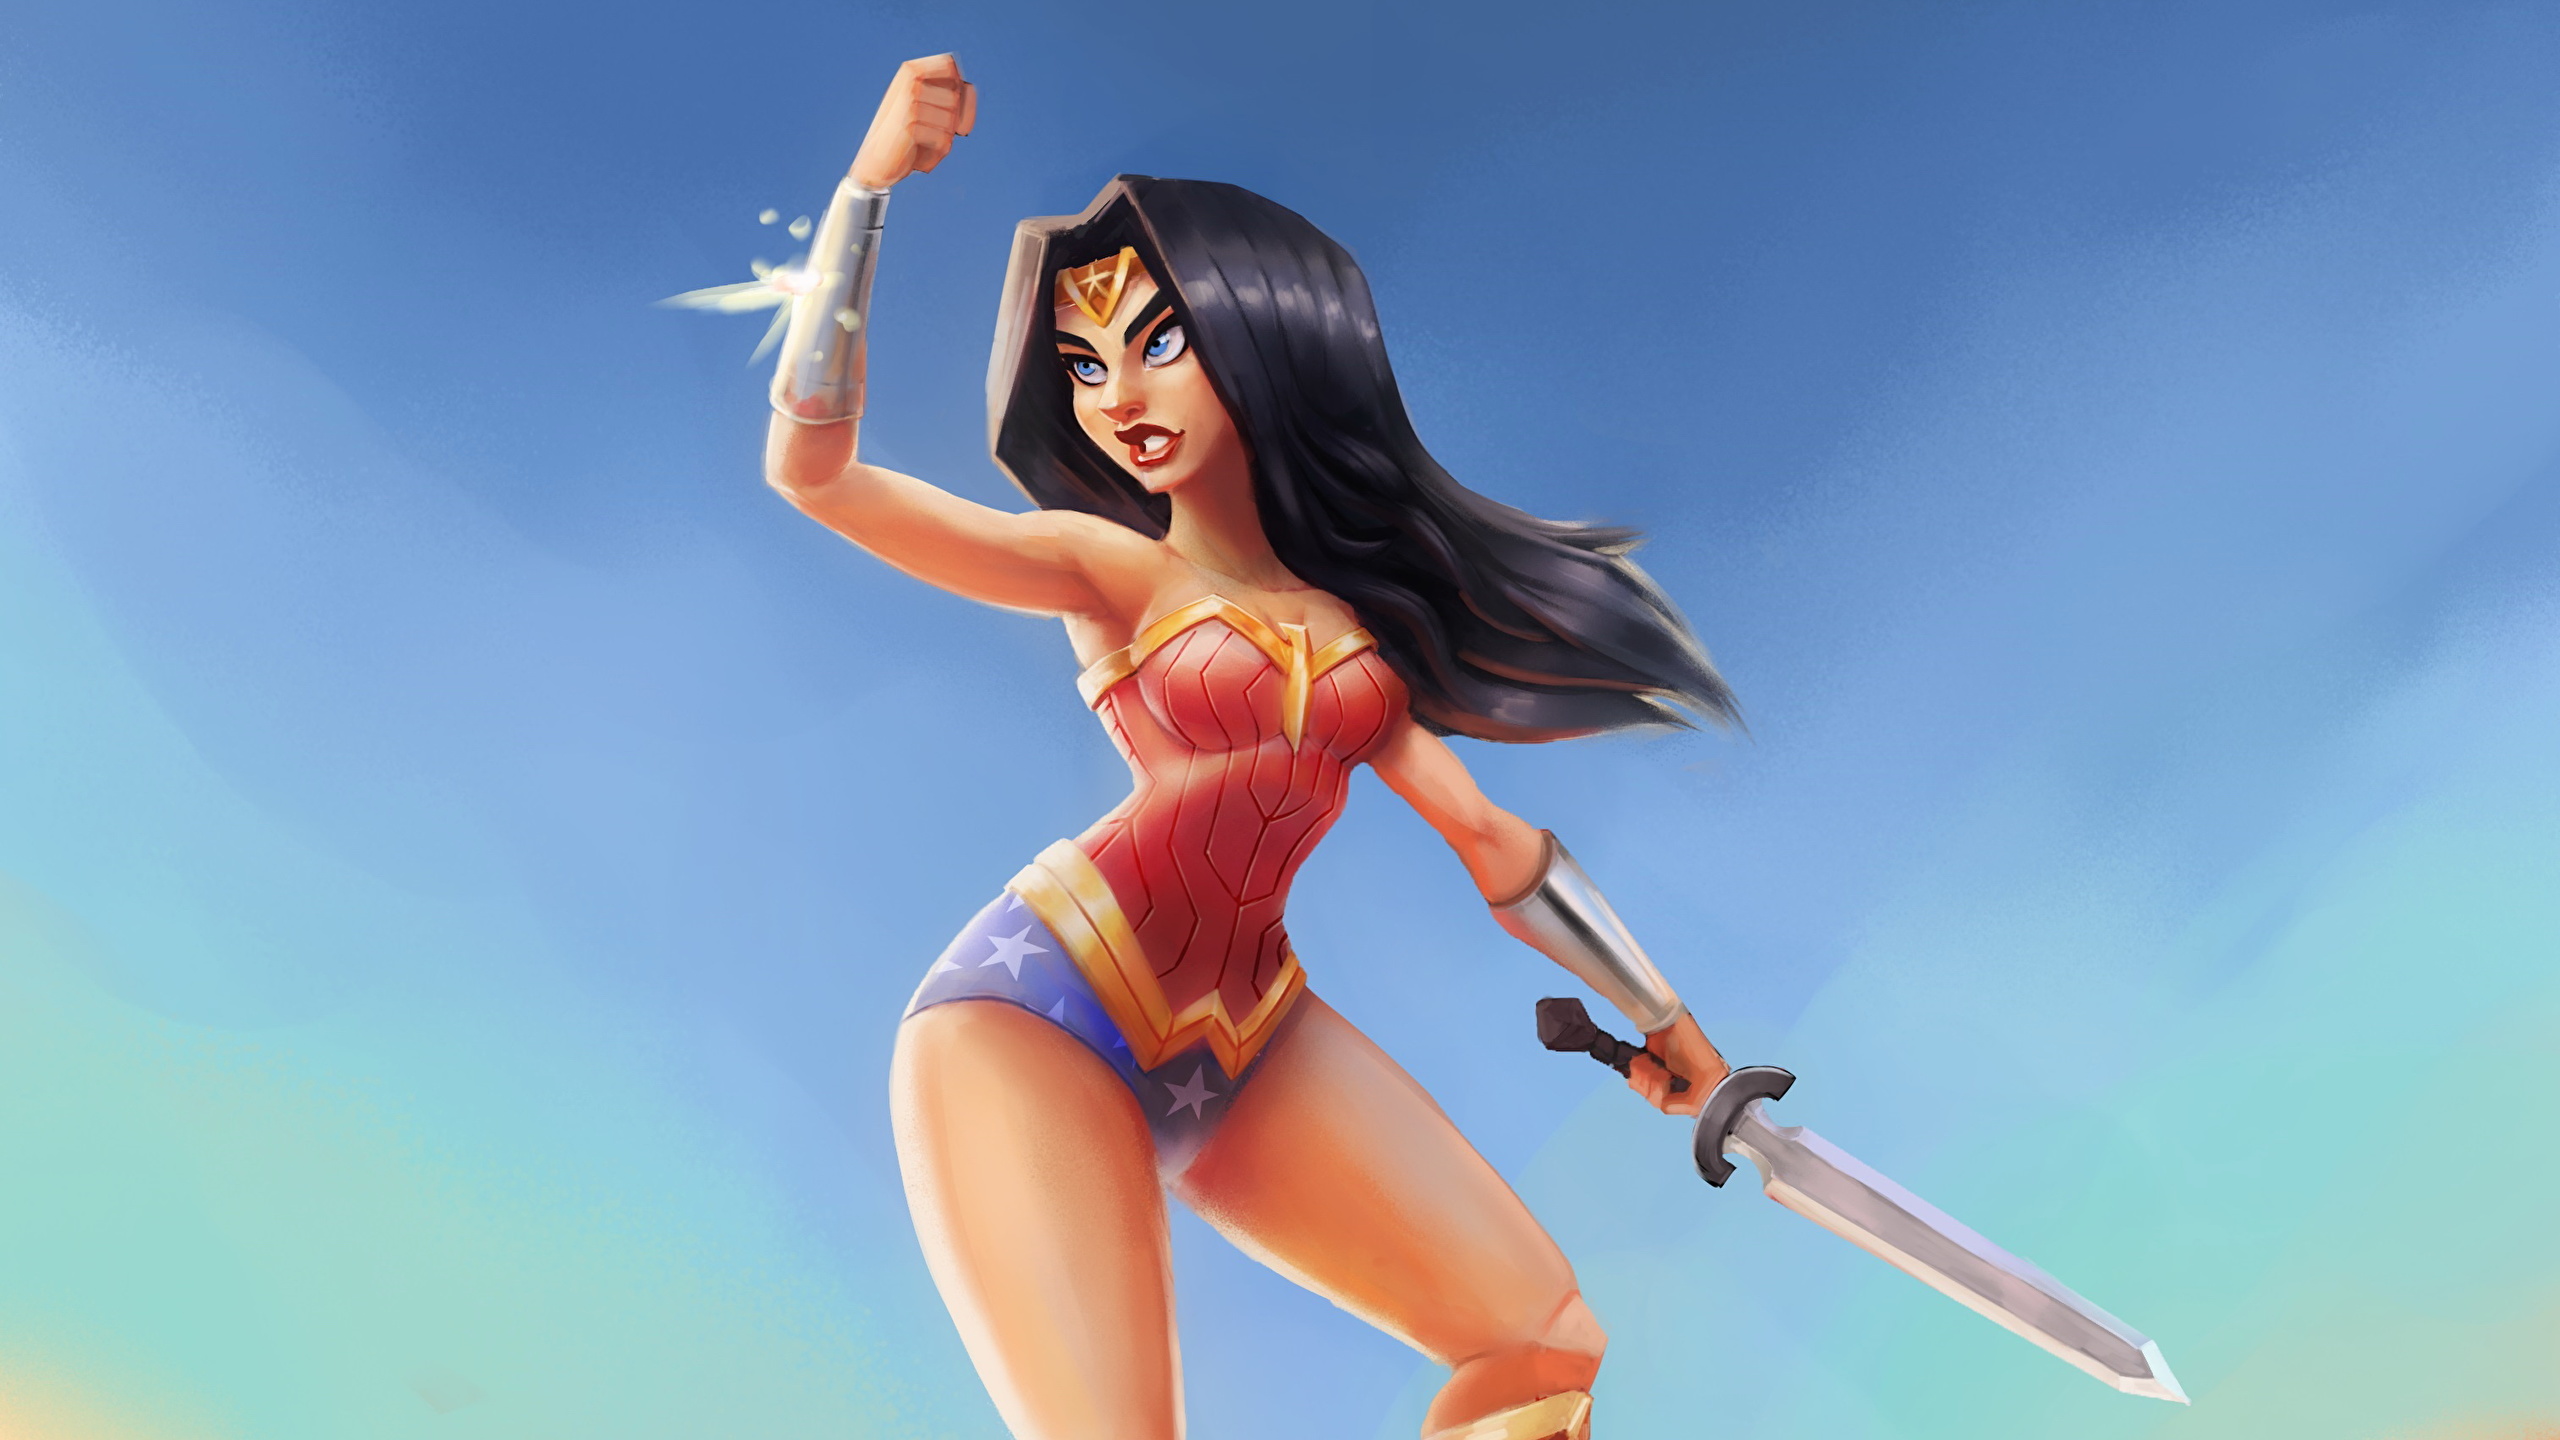 Strong Wonder Woman Cartoon - HD Wallpaper 